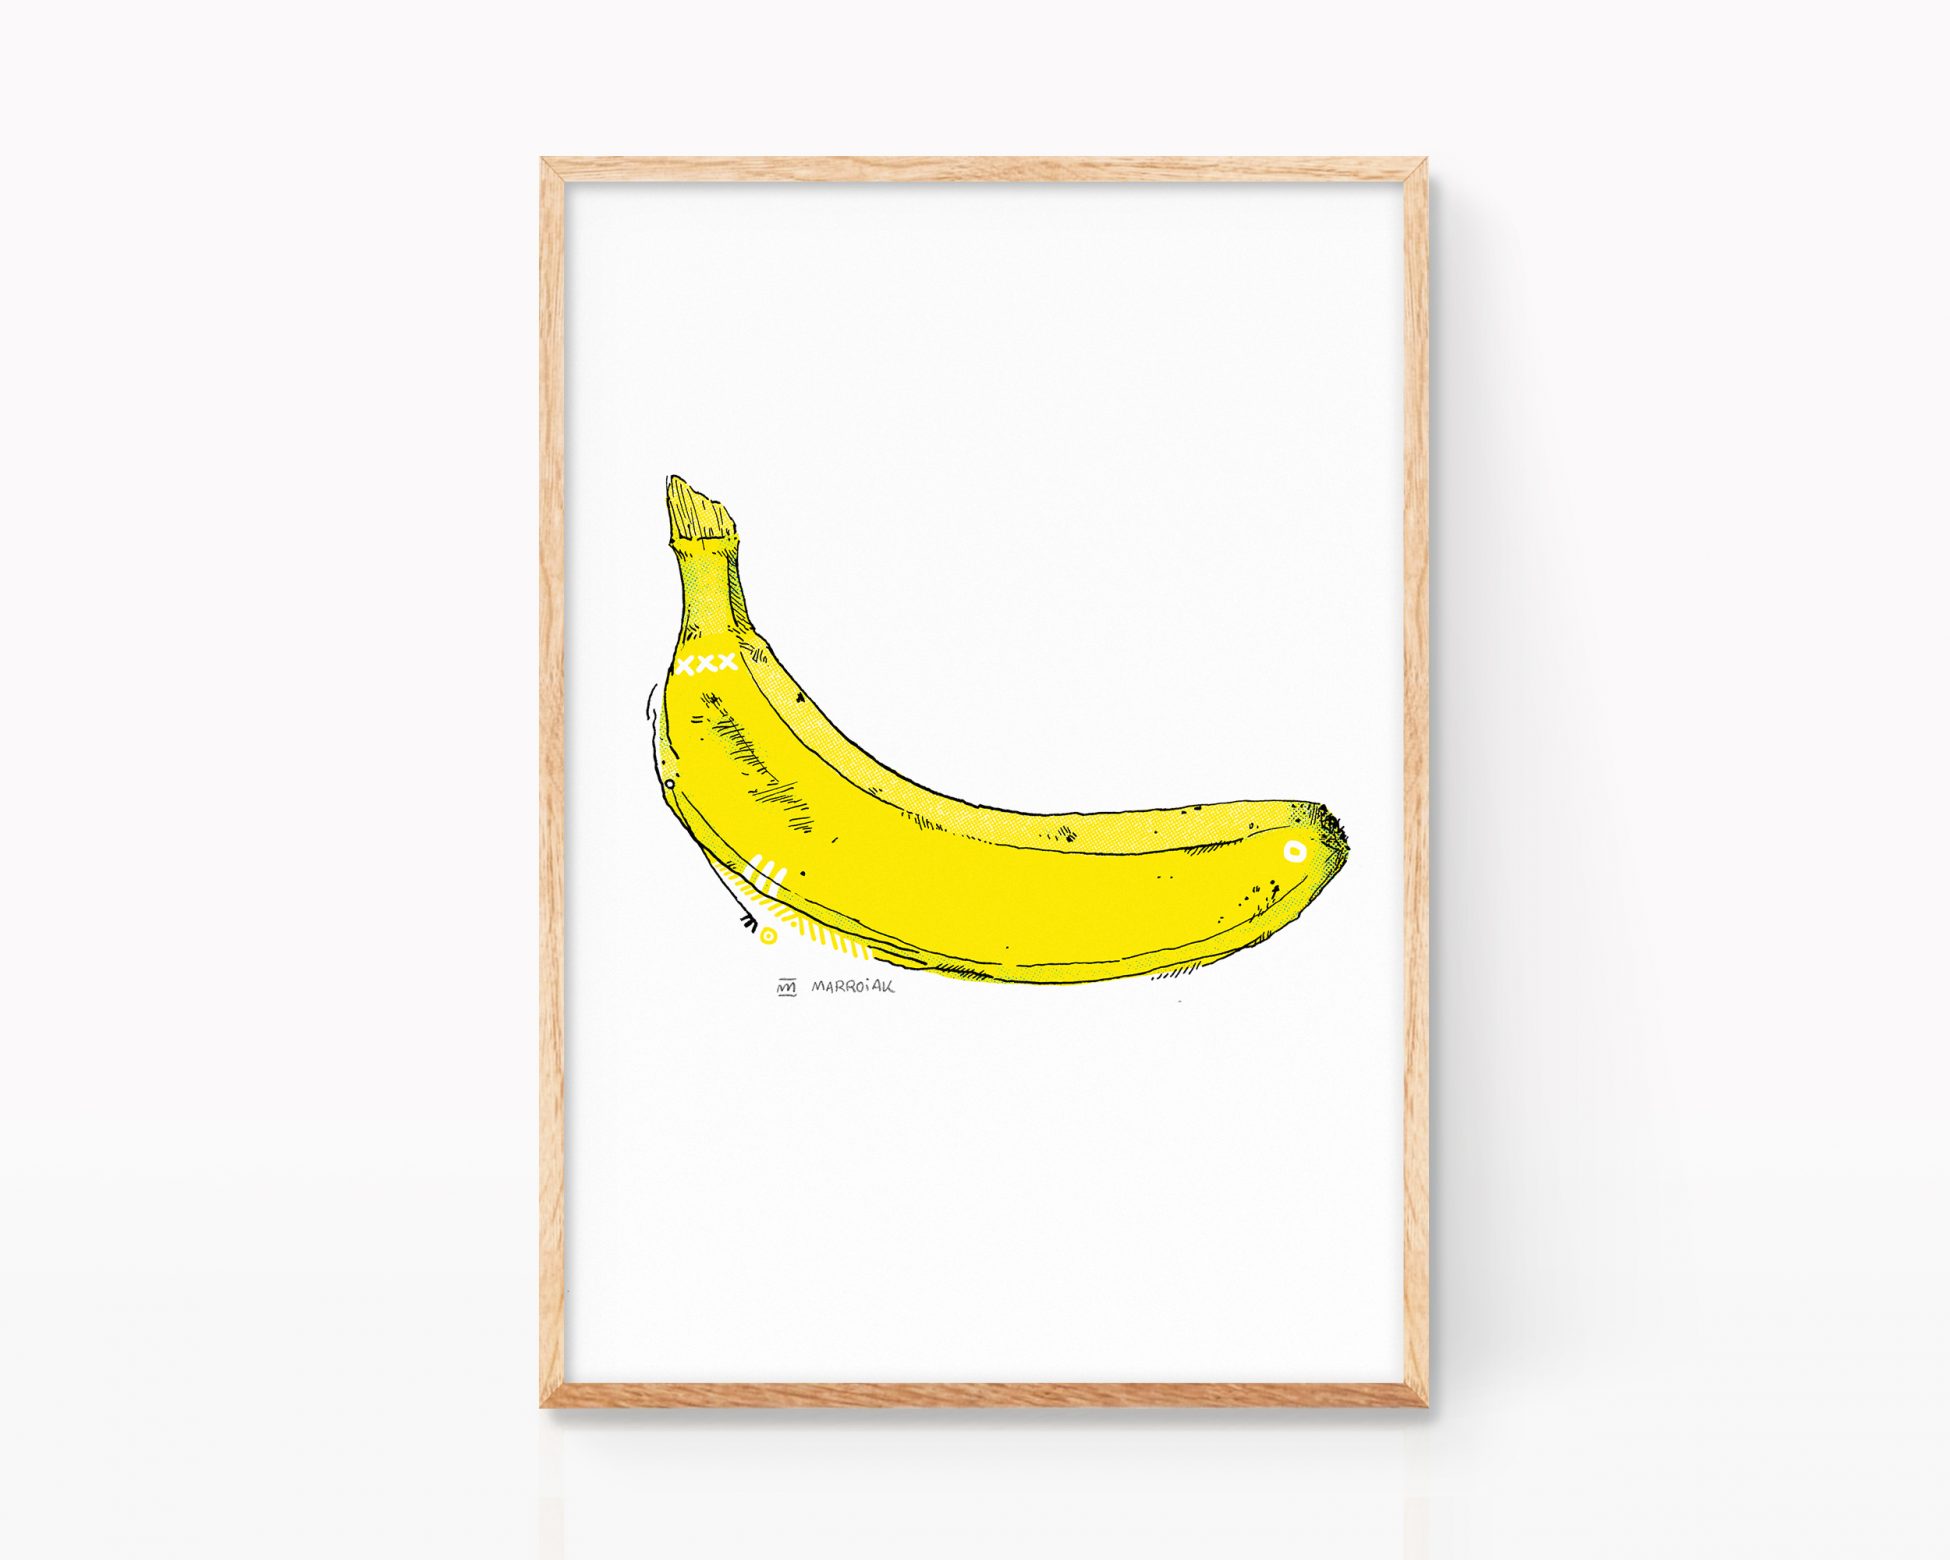 Cuadro decorativo para enmarcar. Decoración cocinas. Banana al estilo Andy Warhol y Velvet Underground. Dibujo original a tinta más impresión digital.